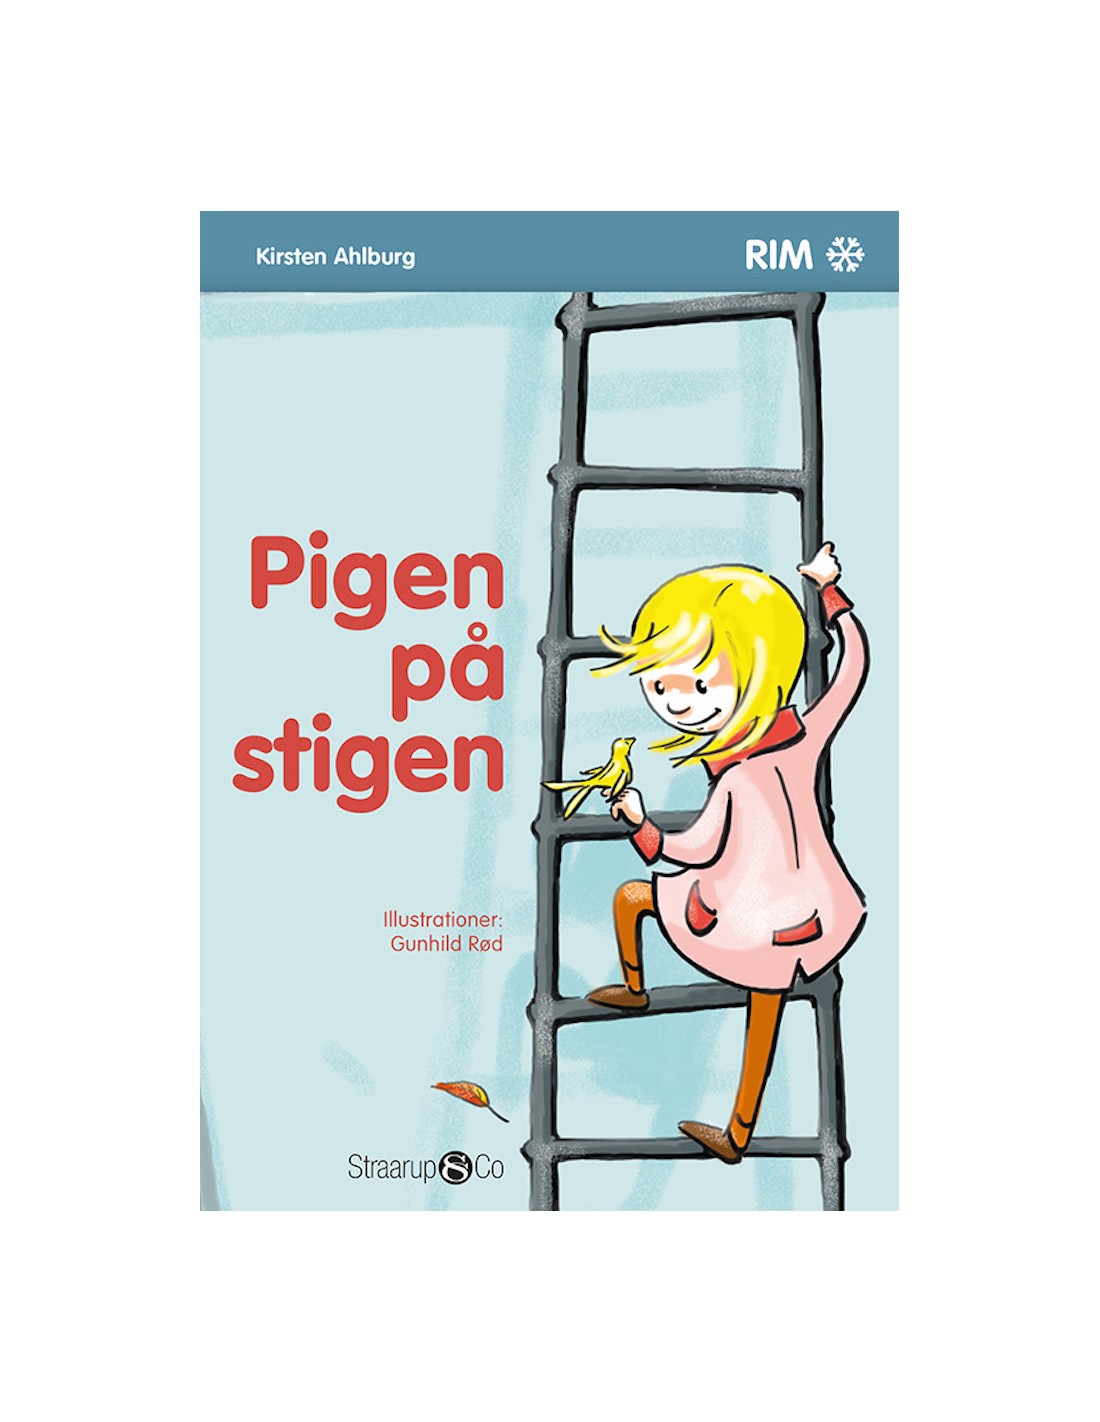 Pigen på stigen ISBN 9788793592261 skrevet Kirsten Ahlburg